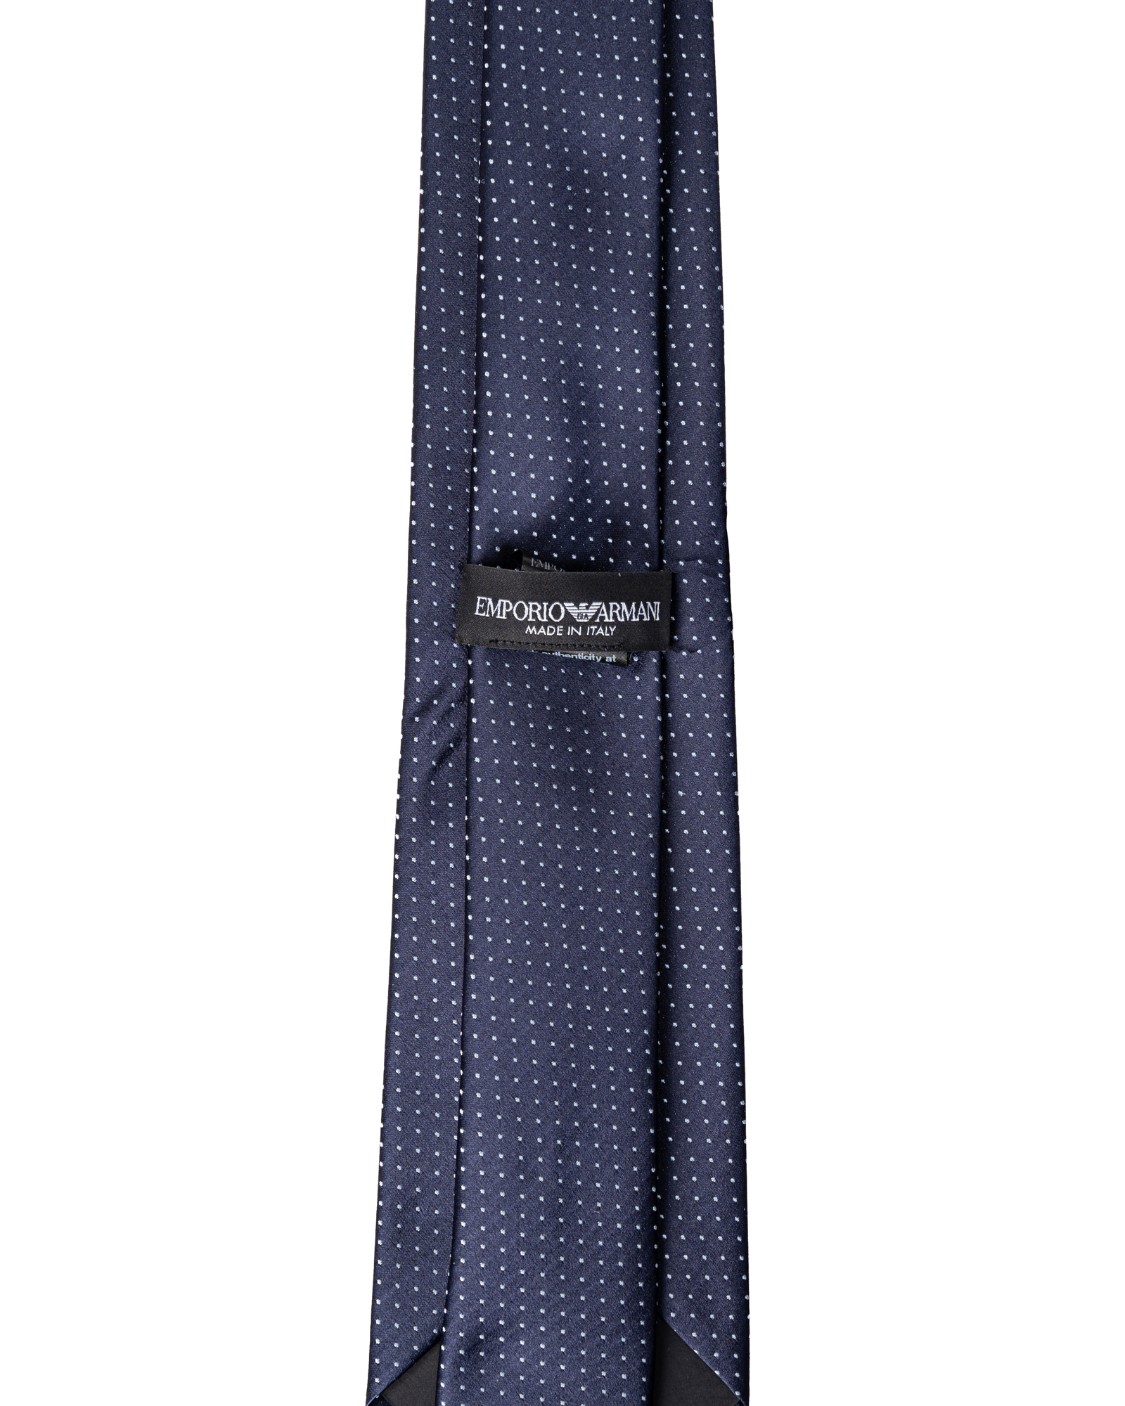 shop EMPORIO ARMANI  Cravatta: Emporio Armani cravatta in seta.
Pura seta con pois jacquard. 
Composizione: 100% seta.
Fabbricato in Italia.. 340275 2R664-00035 number 1971329